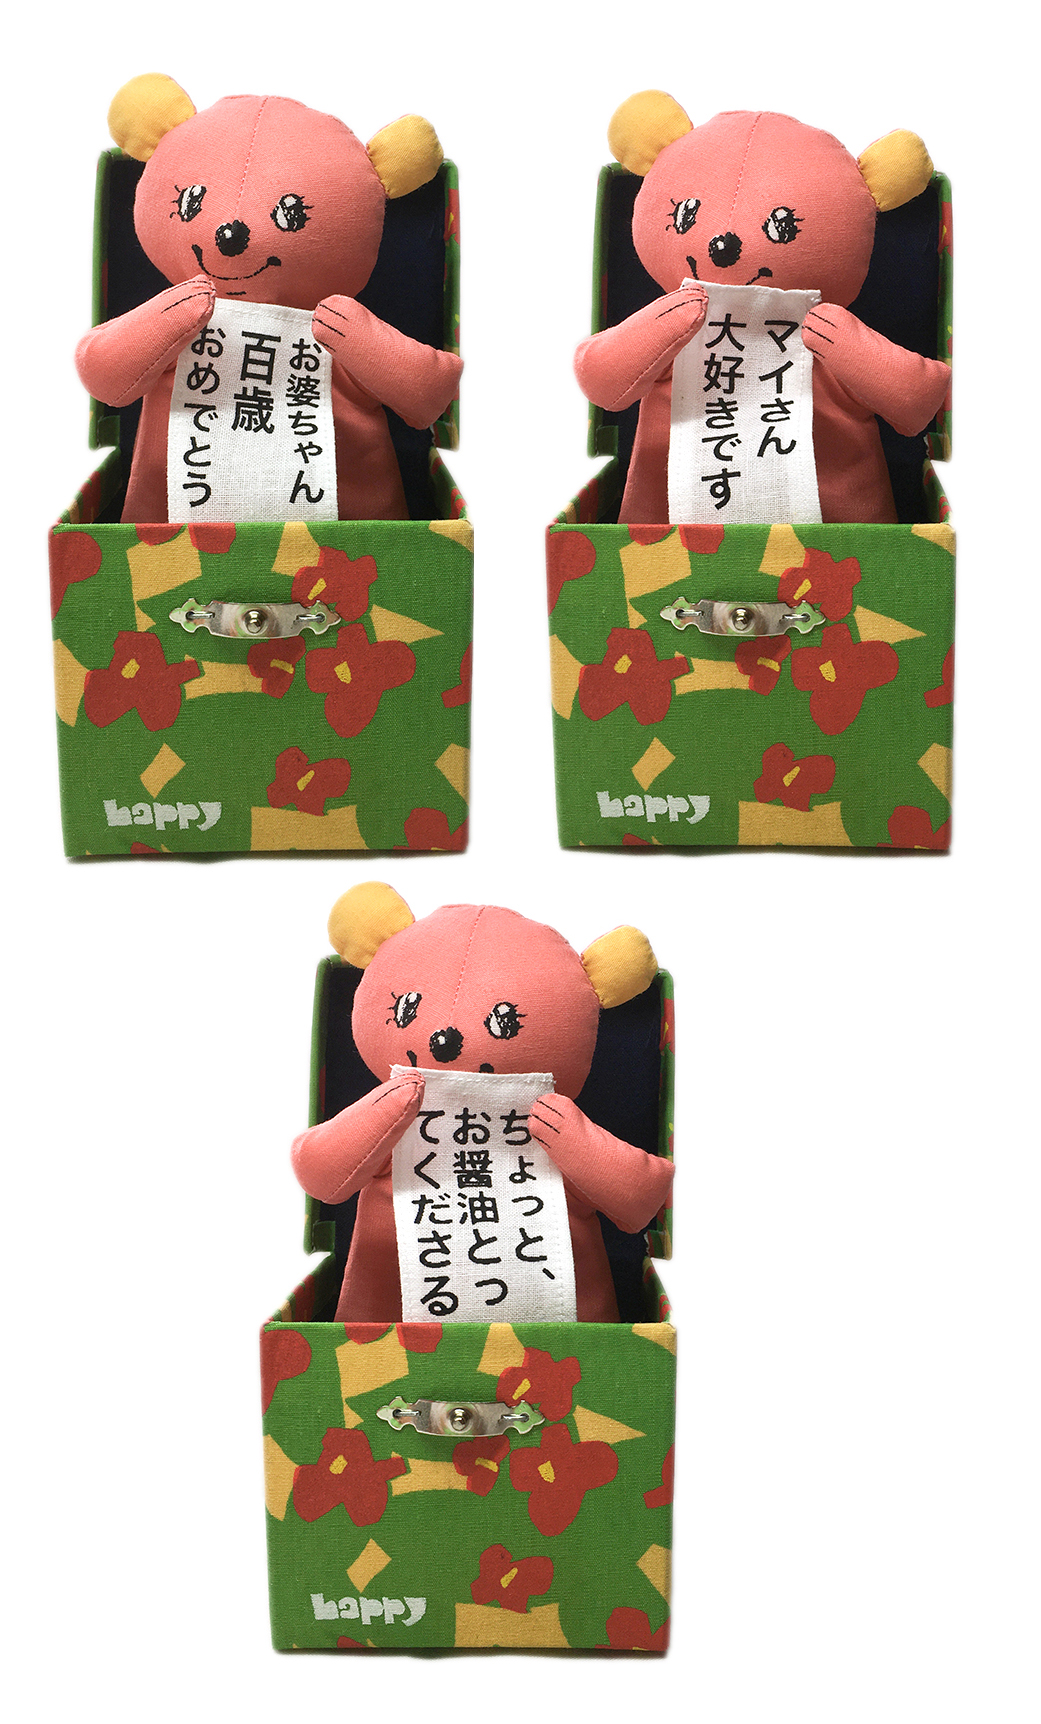 Happy Box お祝い専用 びっくり箱 あなたのご希望のセリフをお入れします Iichi ハンドメイド クラフト作品 手仕事品の通販